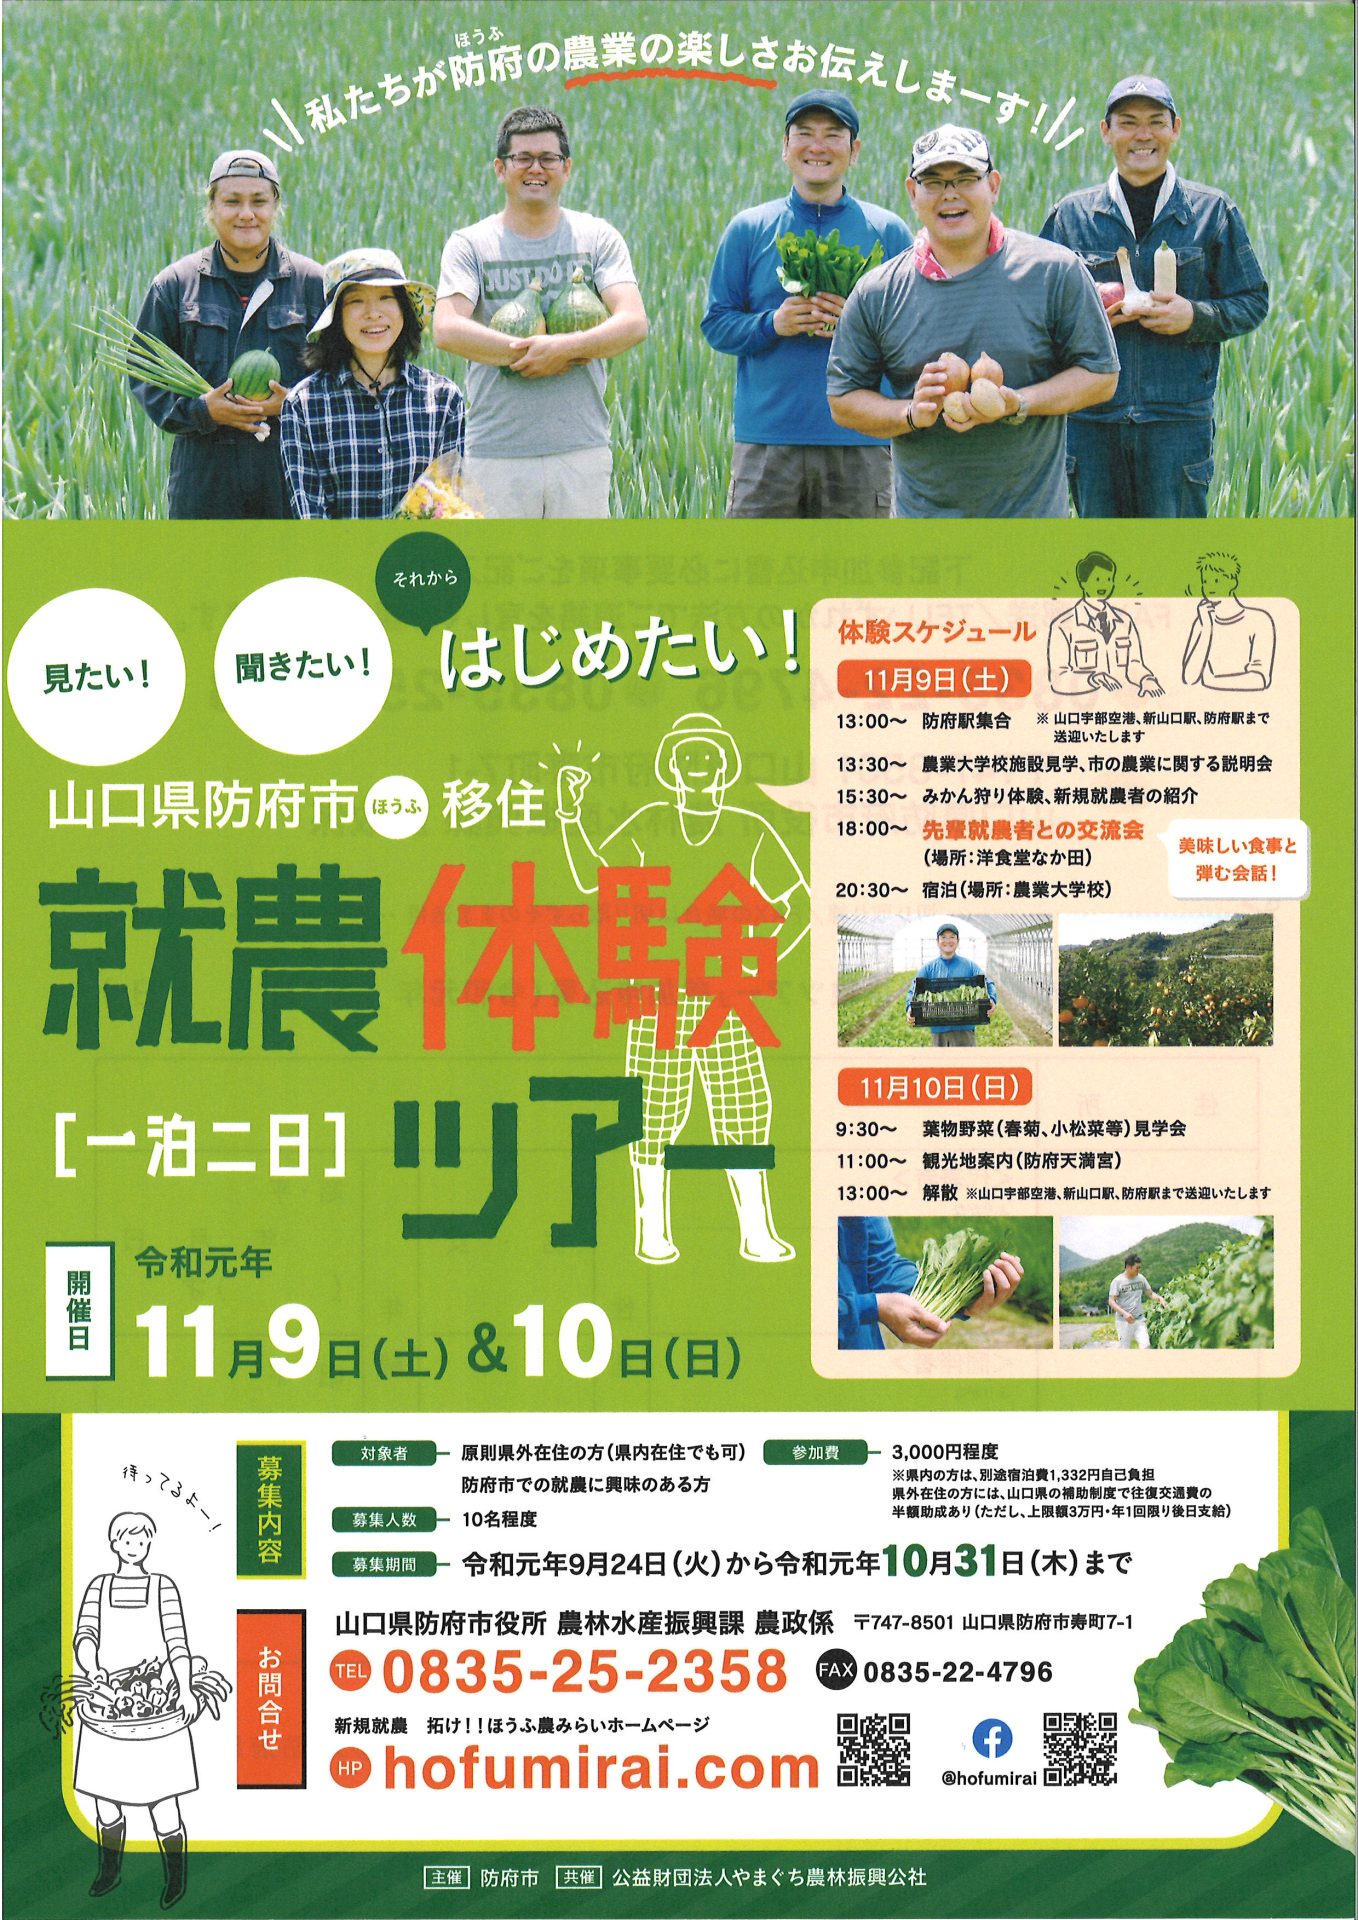 山口県農業の聖地「防府市　就農体験ツアー」 | 移住関連イベント情報